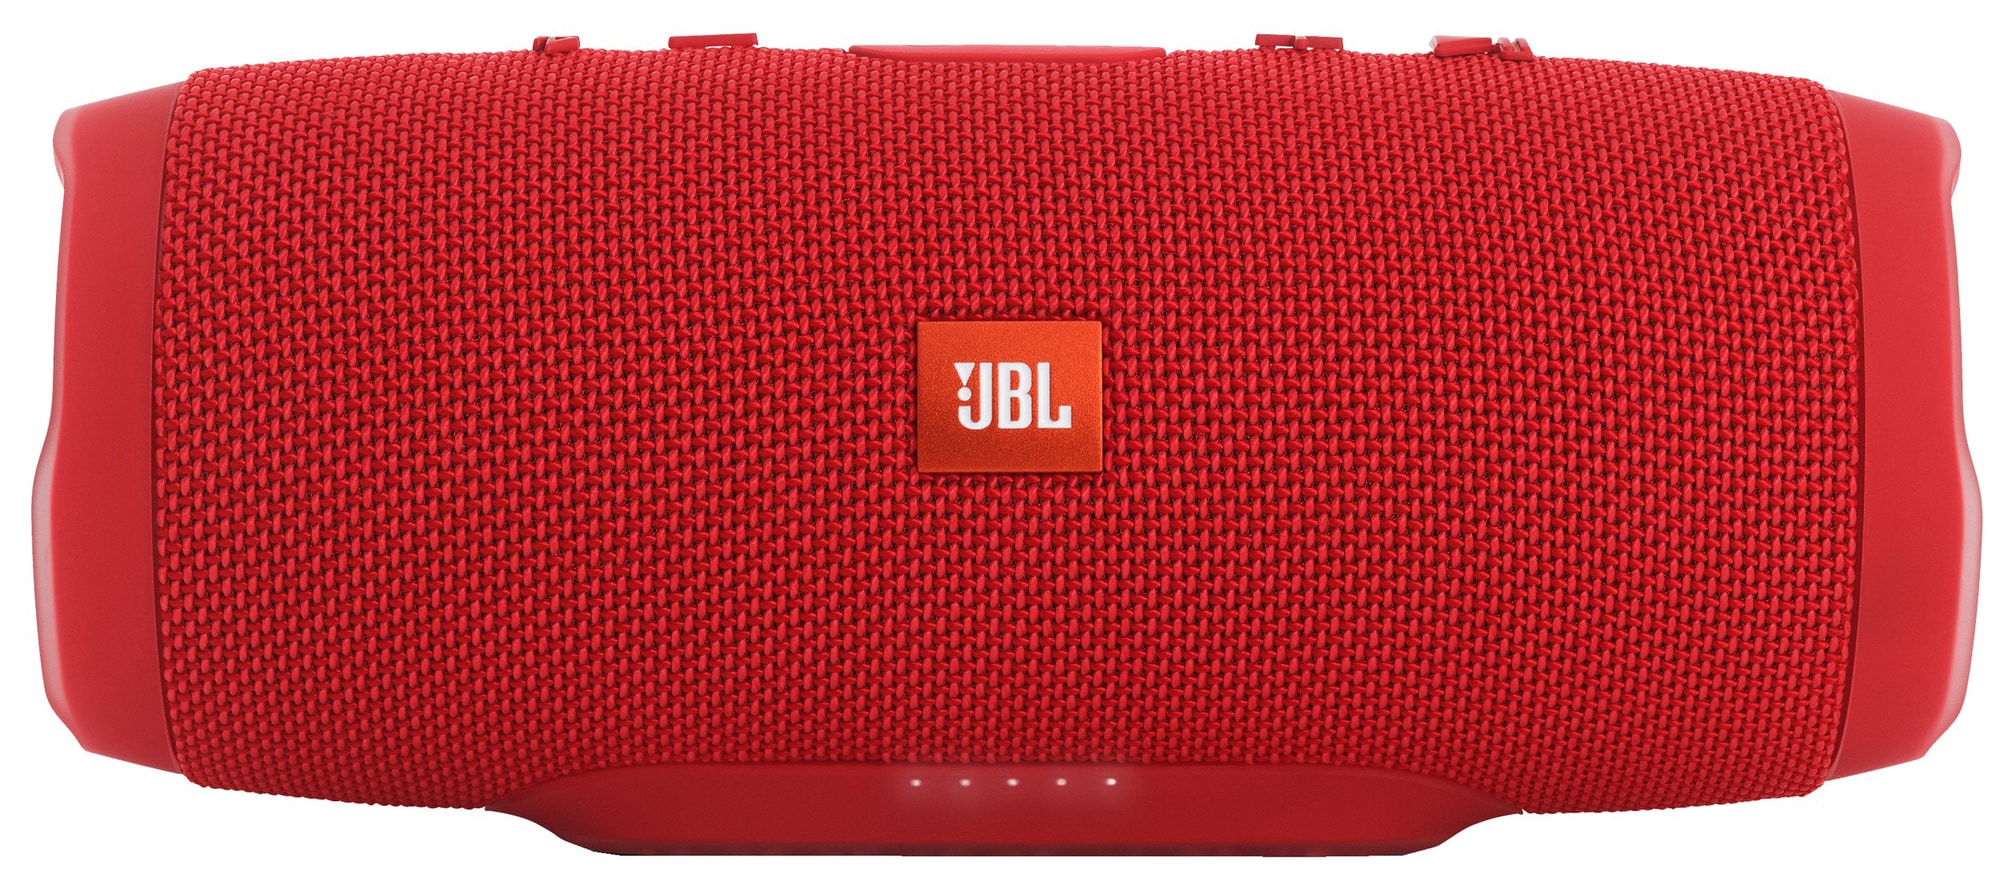 JBL Charge 3 trådløs højttaler - rød | Elgiganten